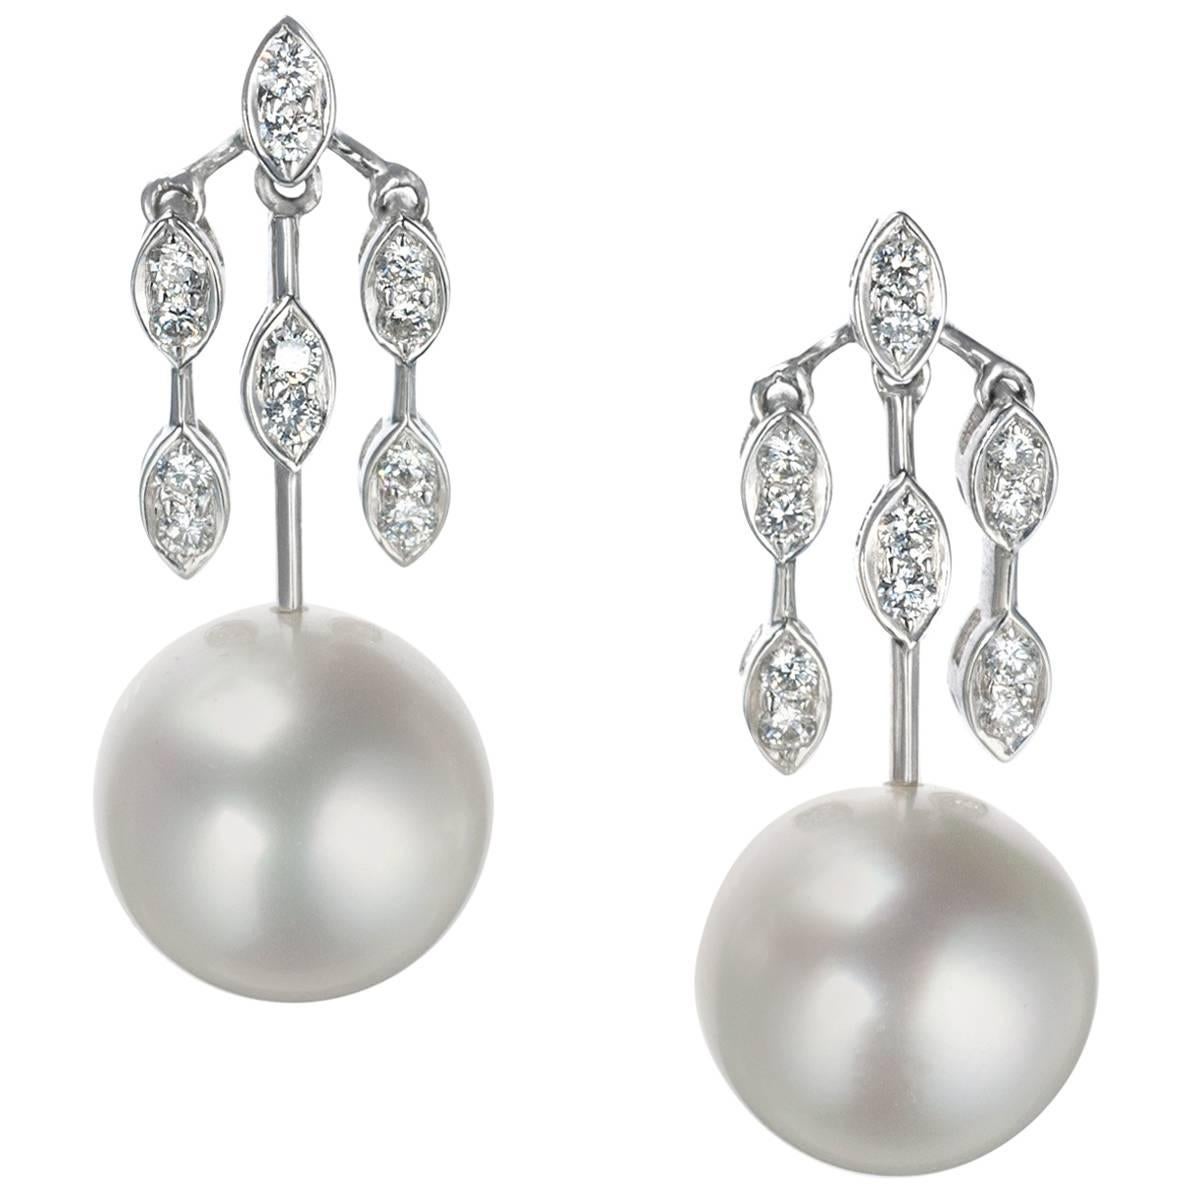 Schoeffel Pearl and Diamond Drop Earrings in 18 Karat White Gold For Sale